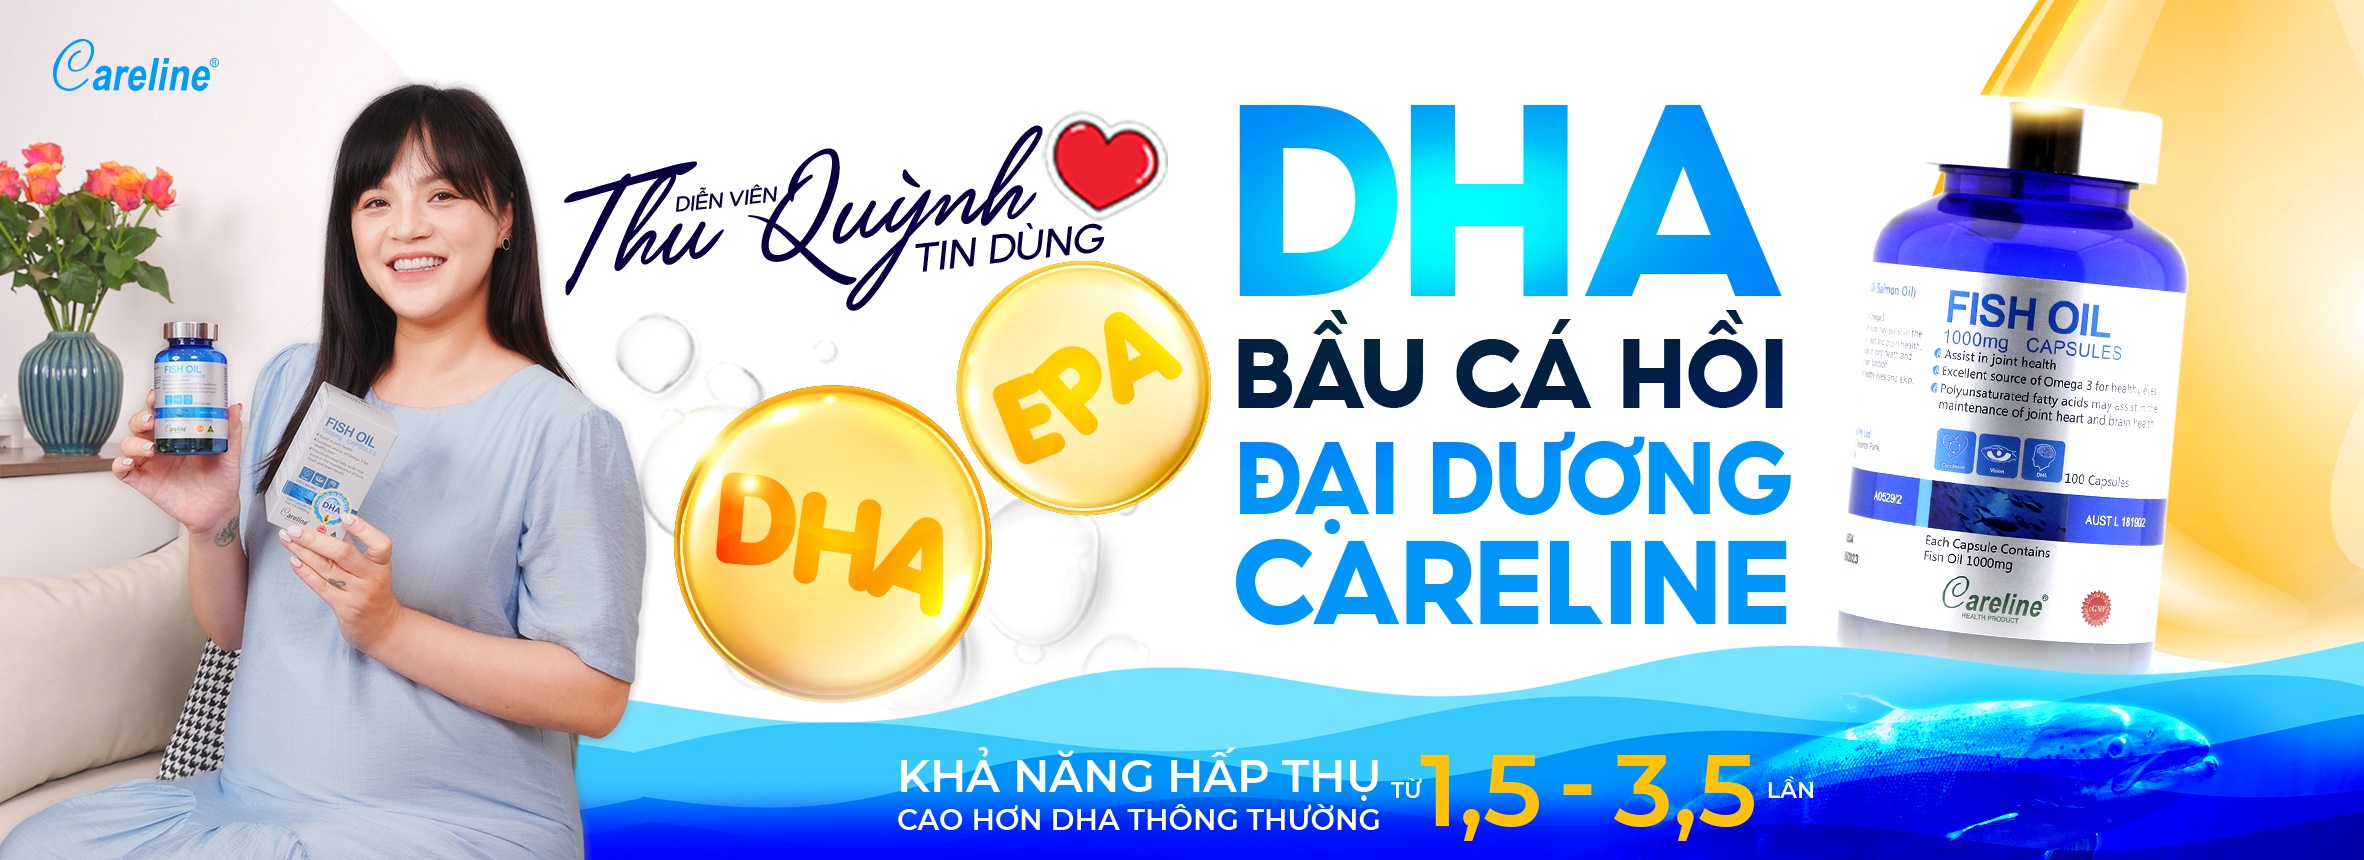 Diễn viên Thu Quỳnh tin dùng DHA bầu cá hồi Careline